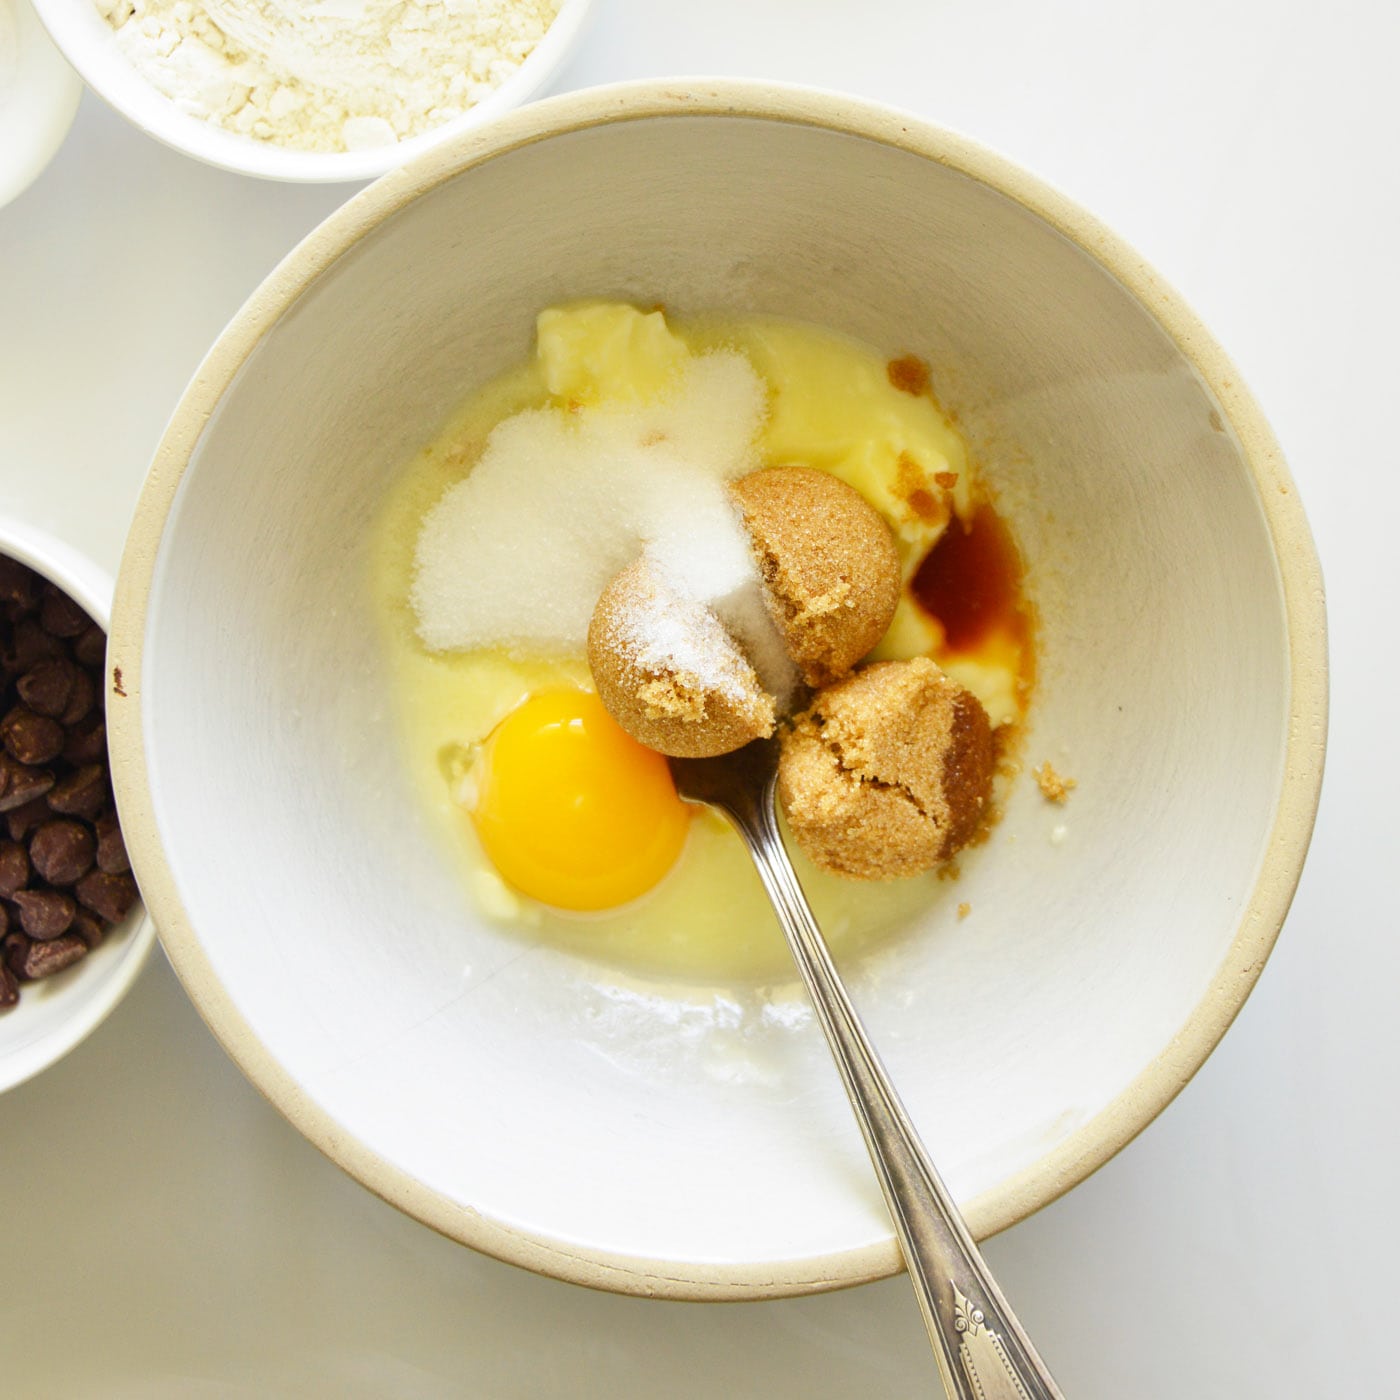 egg yolk, butter, brown sugar, granulated sugar and vanilla in a mixing bowl